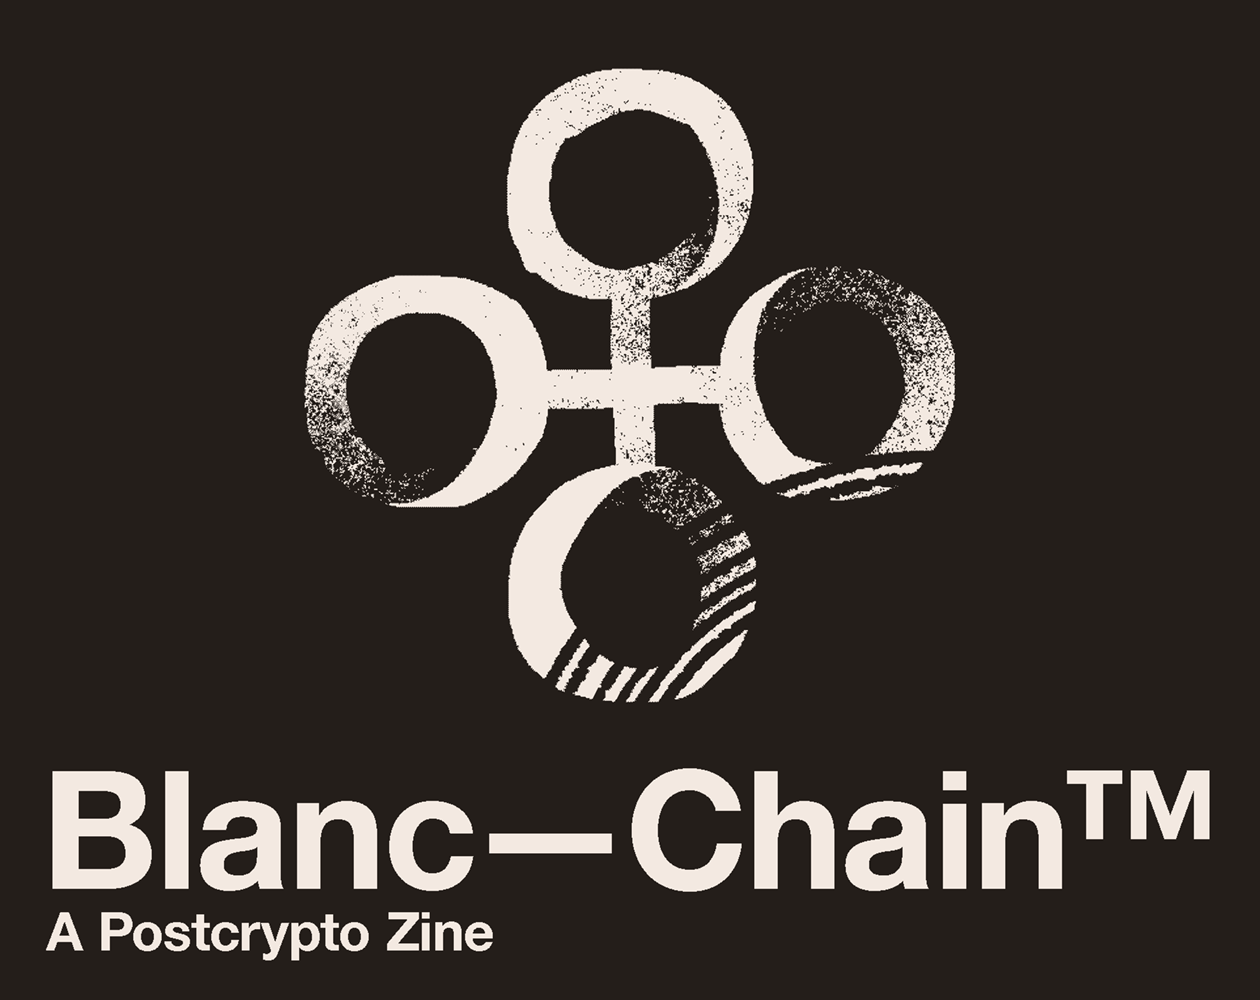 Blanc—Chain™